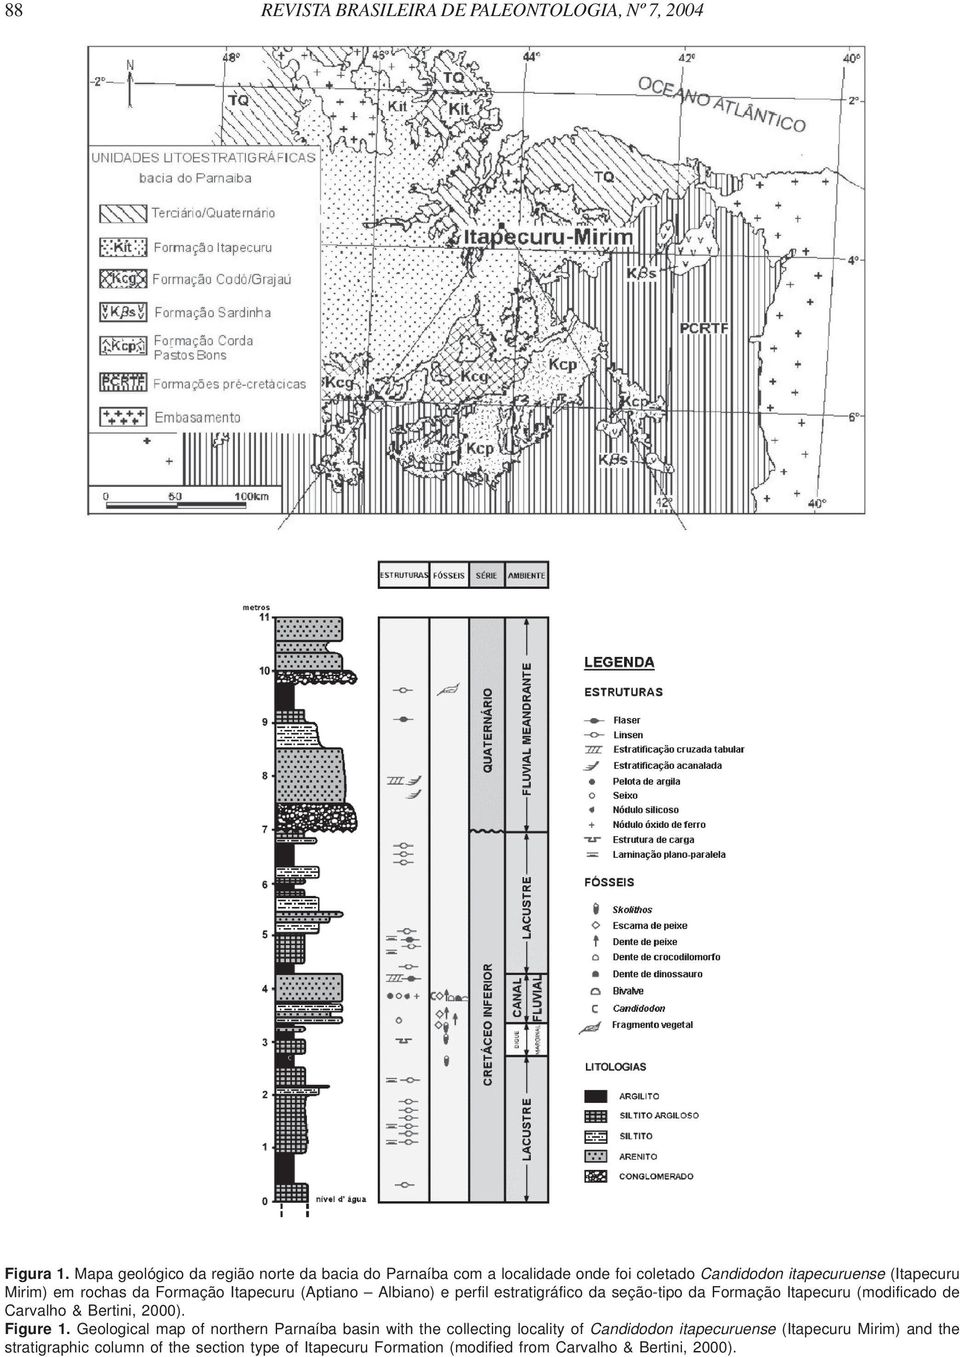 Formação Itapecuru (Aptiano Albiano) e perfil estratigráfico da seção-tipo da Formação Itapecuru (modificado de Carvalho & Bertini, 2000).